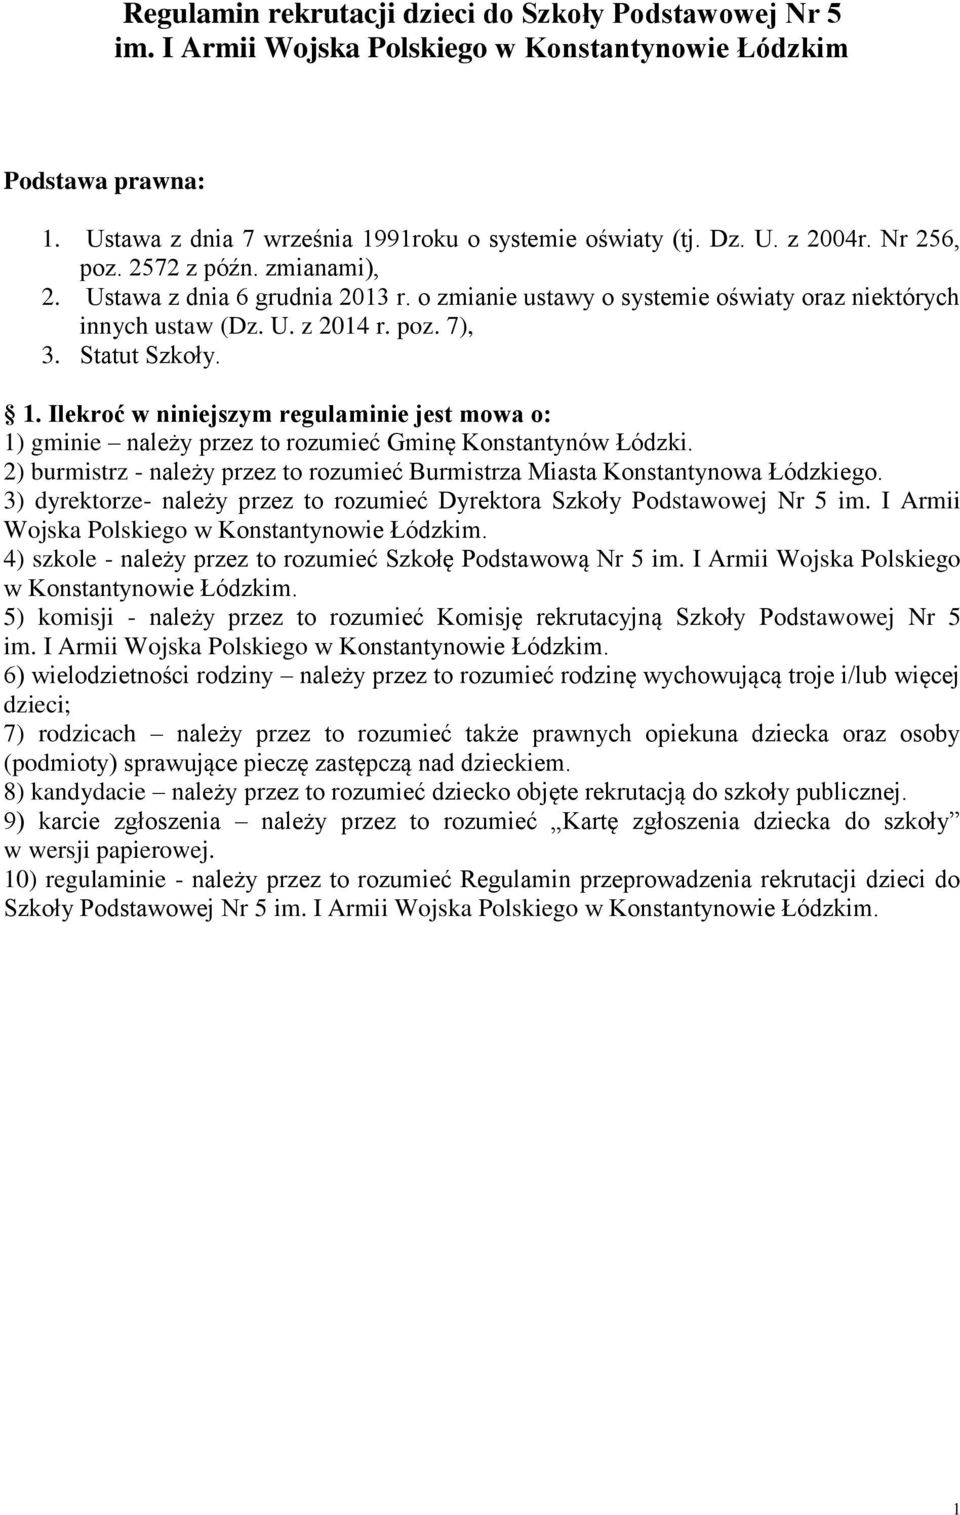 Ilekroć w niniejszym regulaminie jest mowa o: 1) gminie należy przez to rozumieć Gminę Konstantynów Łódzki. 2) burmistrz - należy przez to rozumieć Burmistrza Miasta Konstantynowa Łódzkiego.